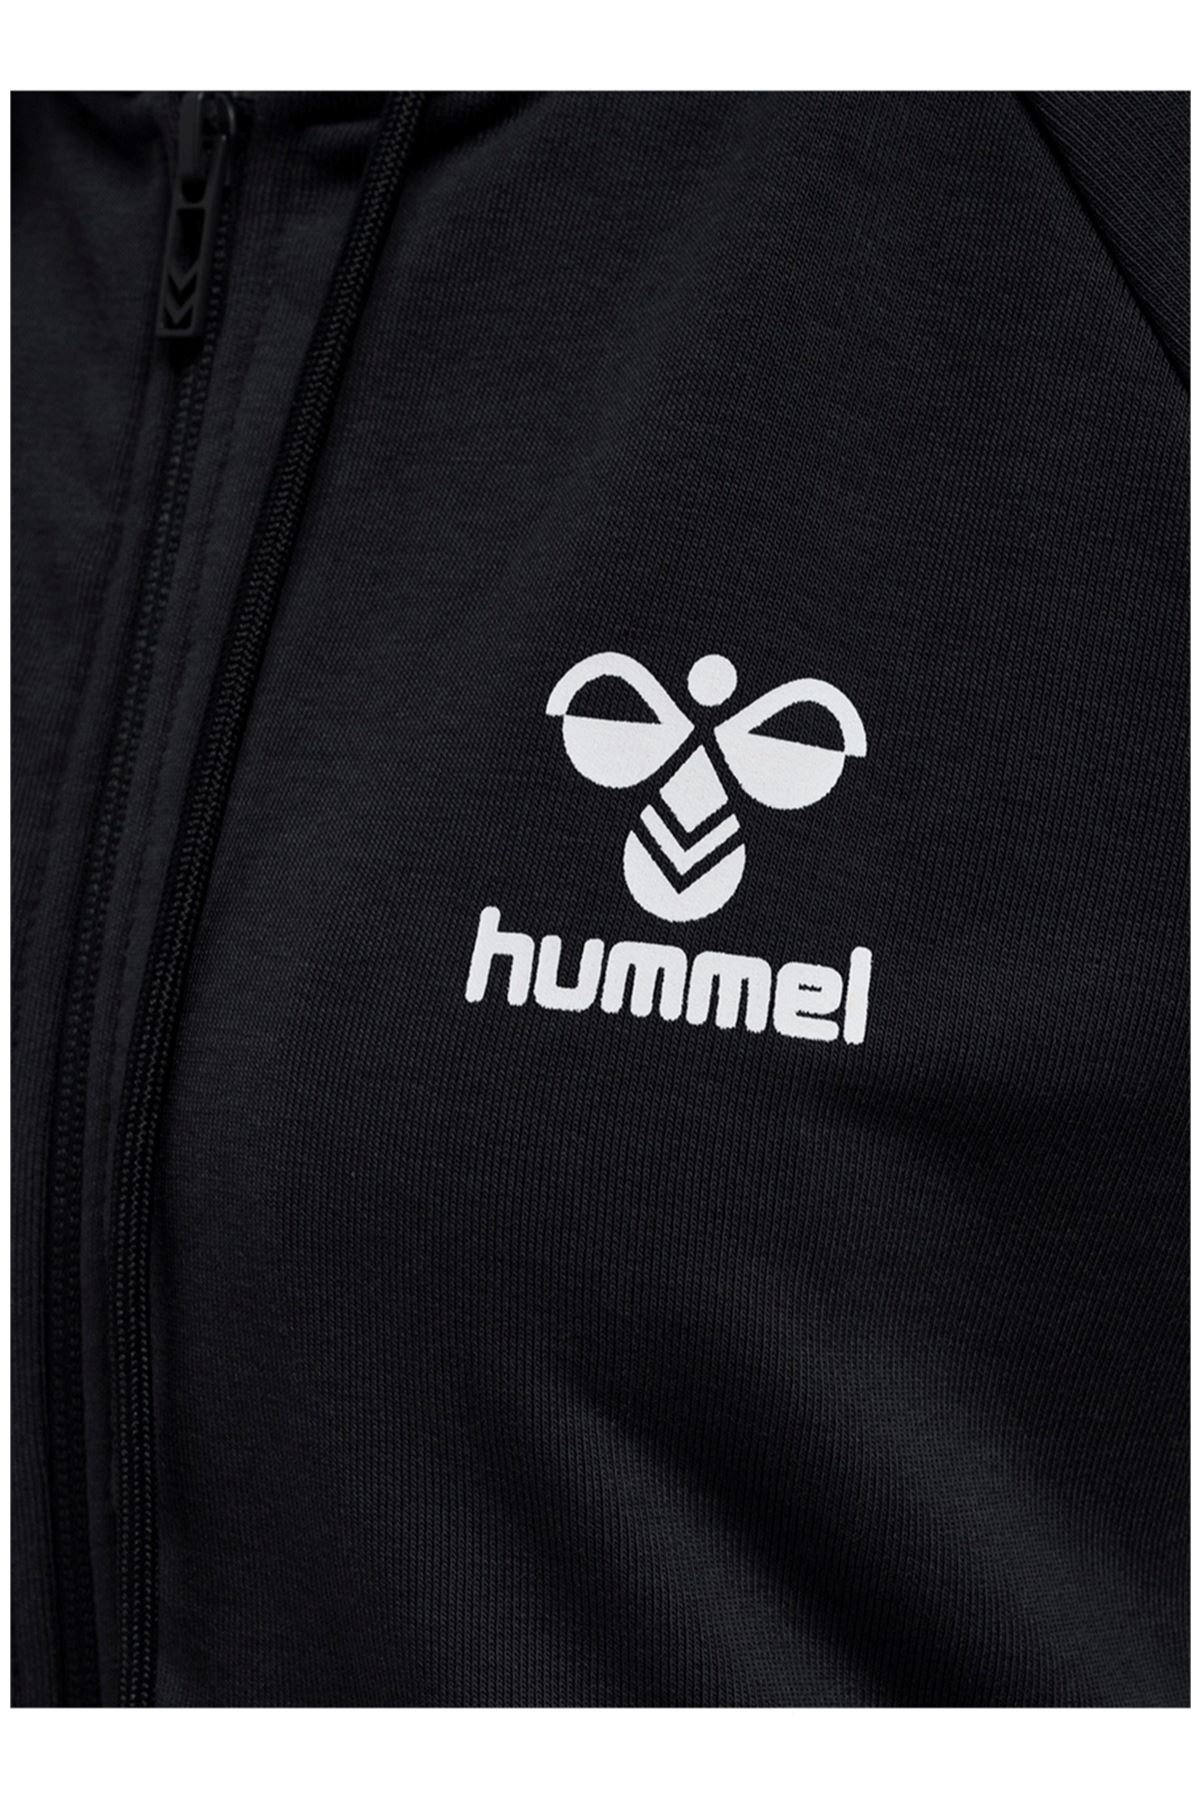 Hummel Hmlt-Nonı 2.0 Zıp Hoodıe Kadın Siyah Ceket - 921458-2001